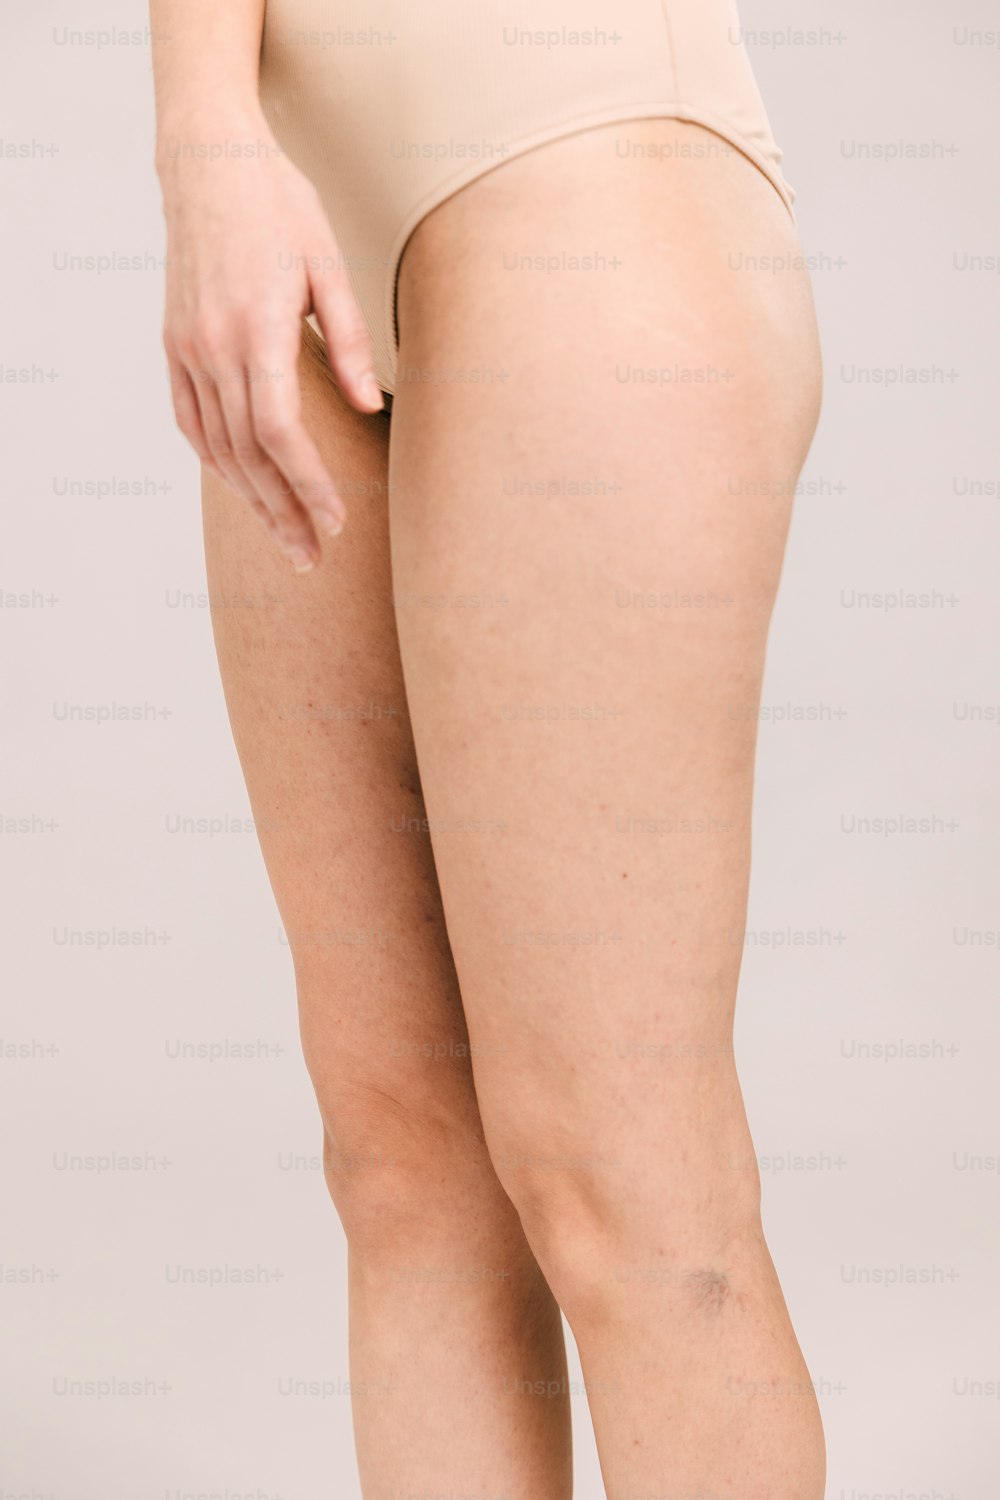 el trasero de una mujer mostrando sus piernas y trasero